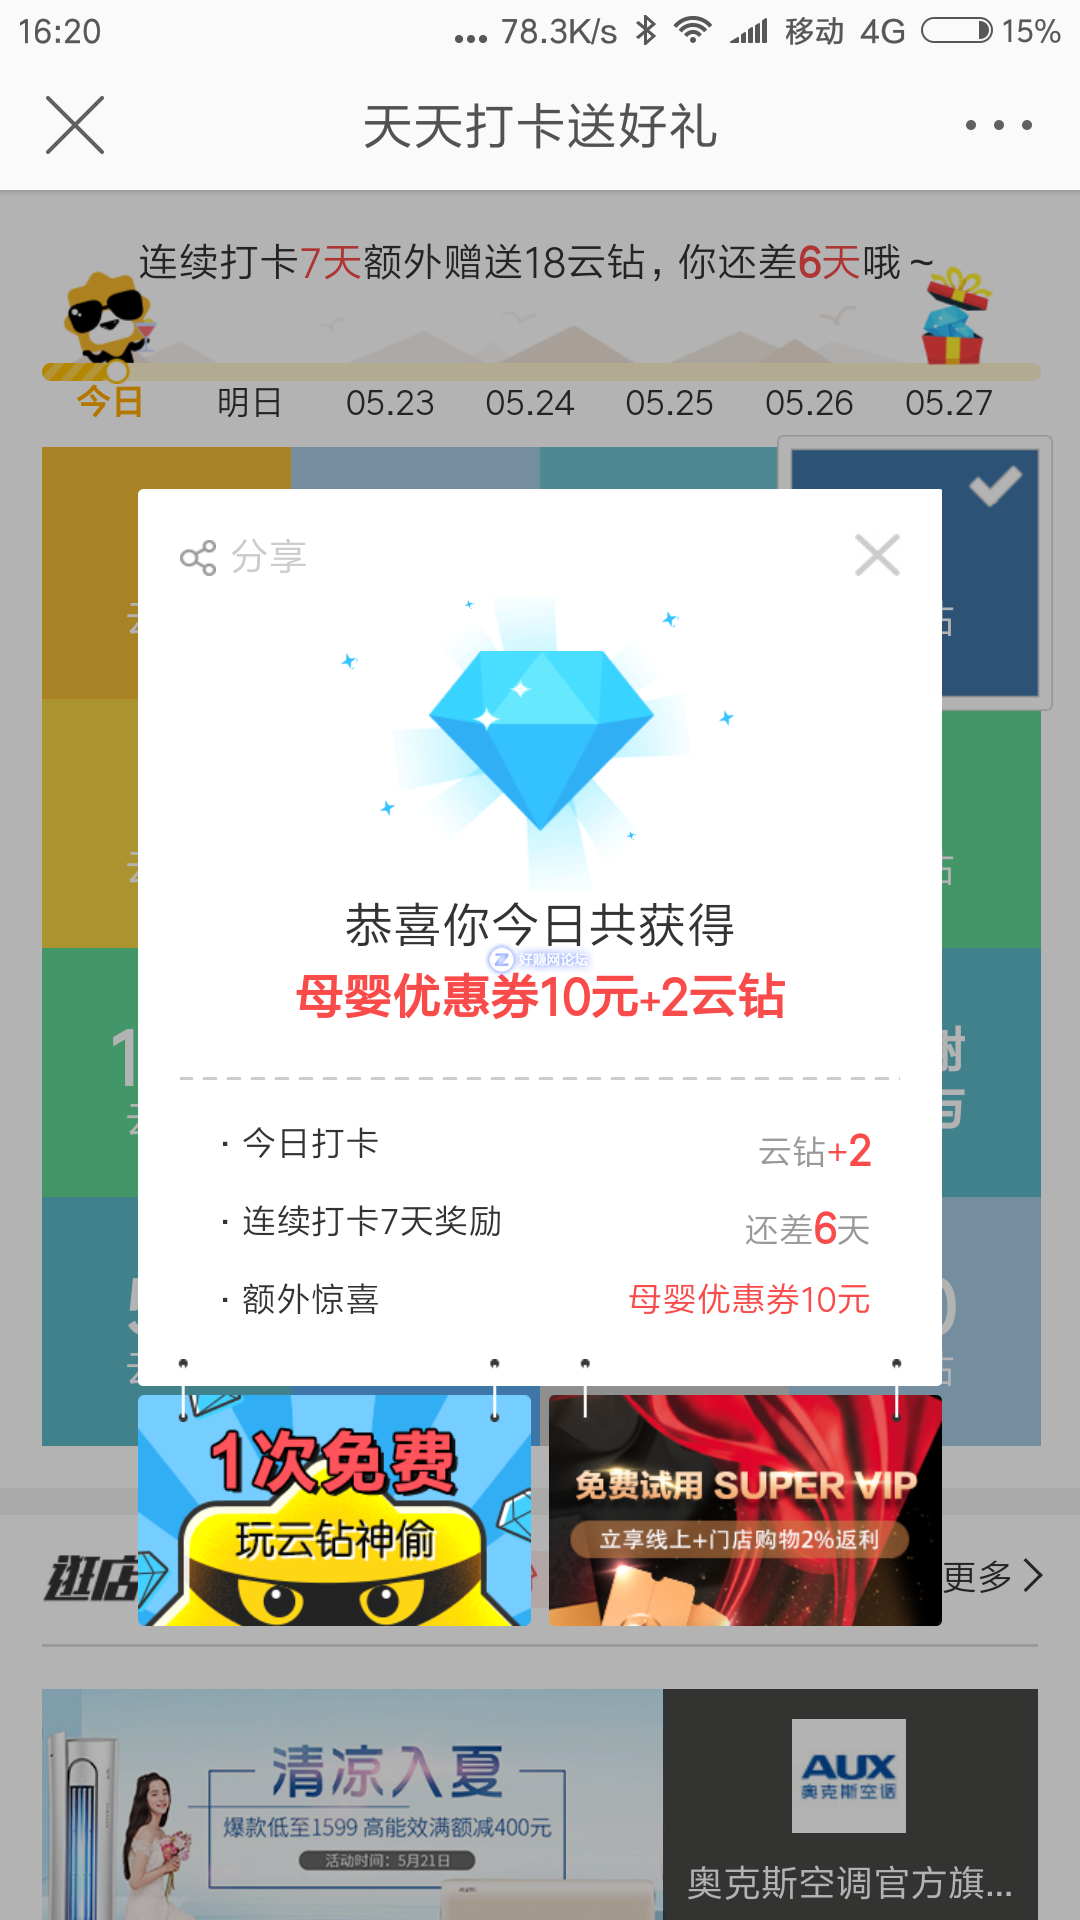 Screenshot_2018-05-21-16-20-13-657_com.sina.weibo.png